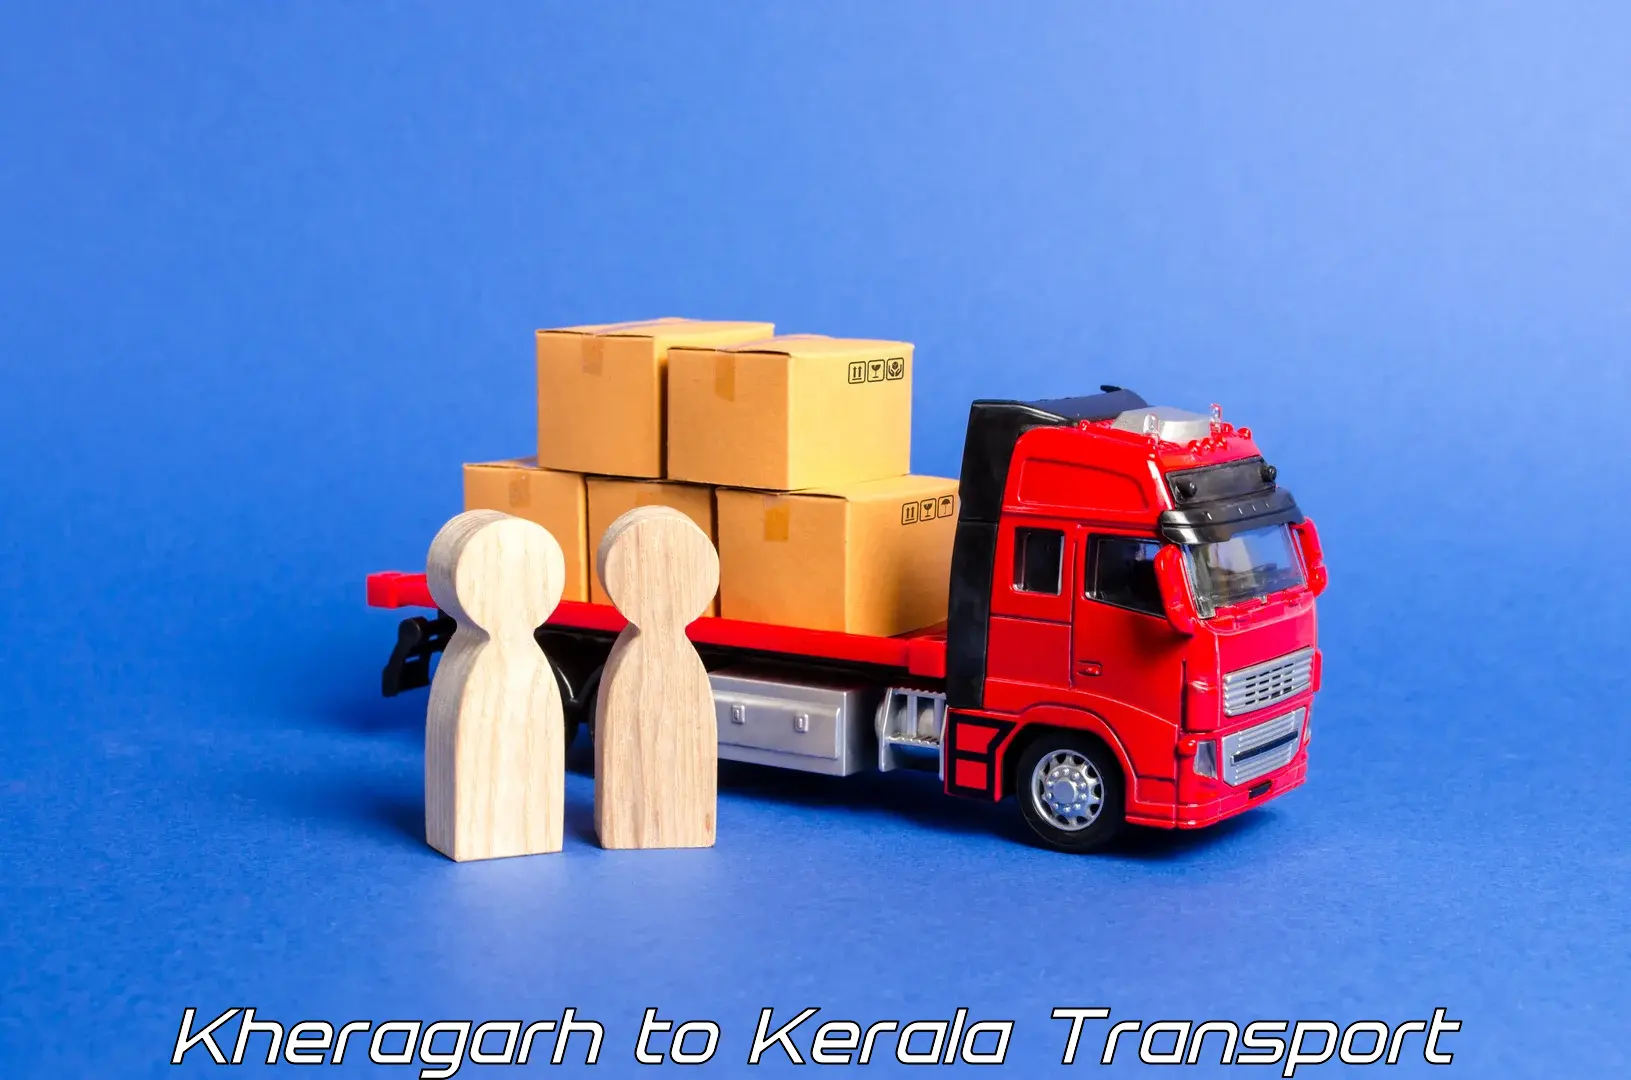 Shipping partner Kheragarh to Chingavanam